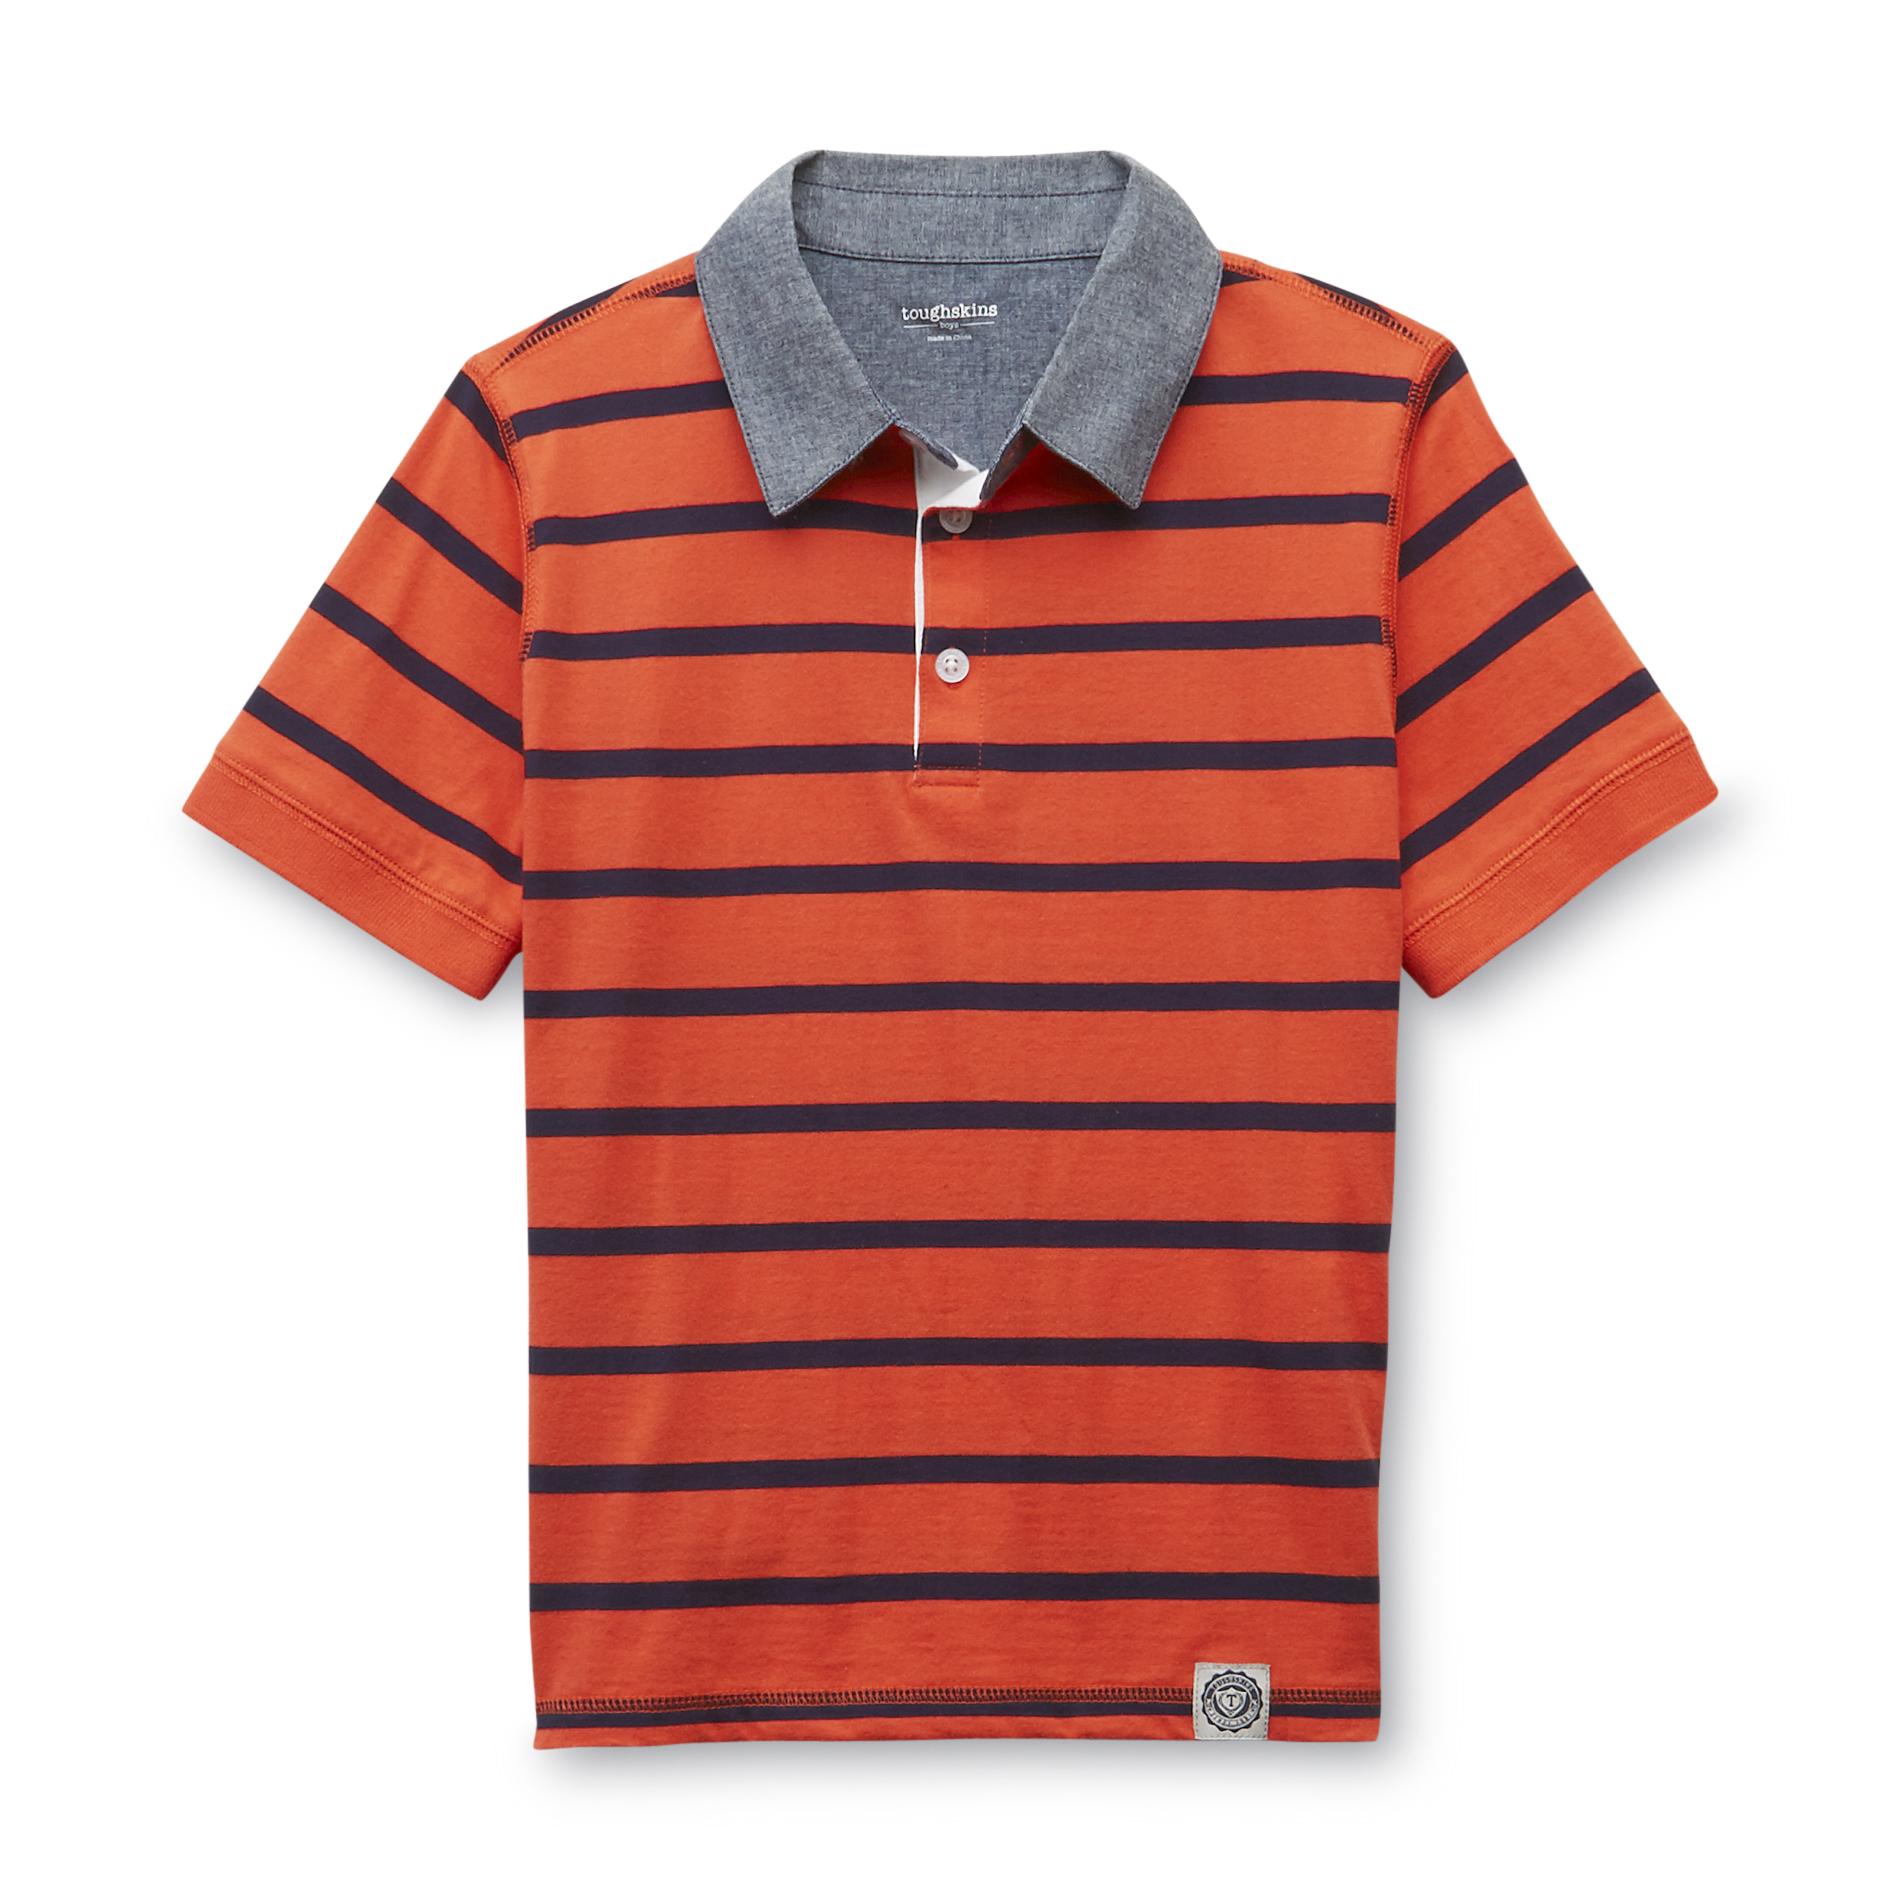 Toughskins Boy's Jersey Knit Polo Shirt - Striped